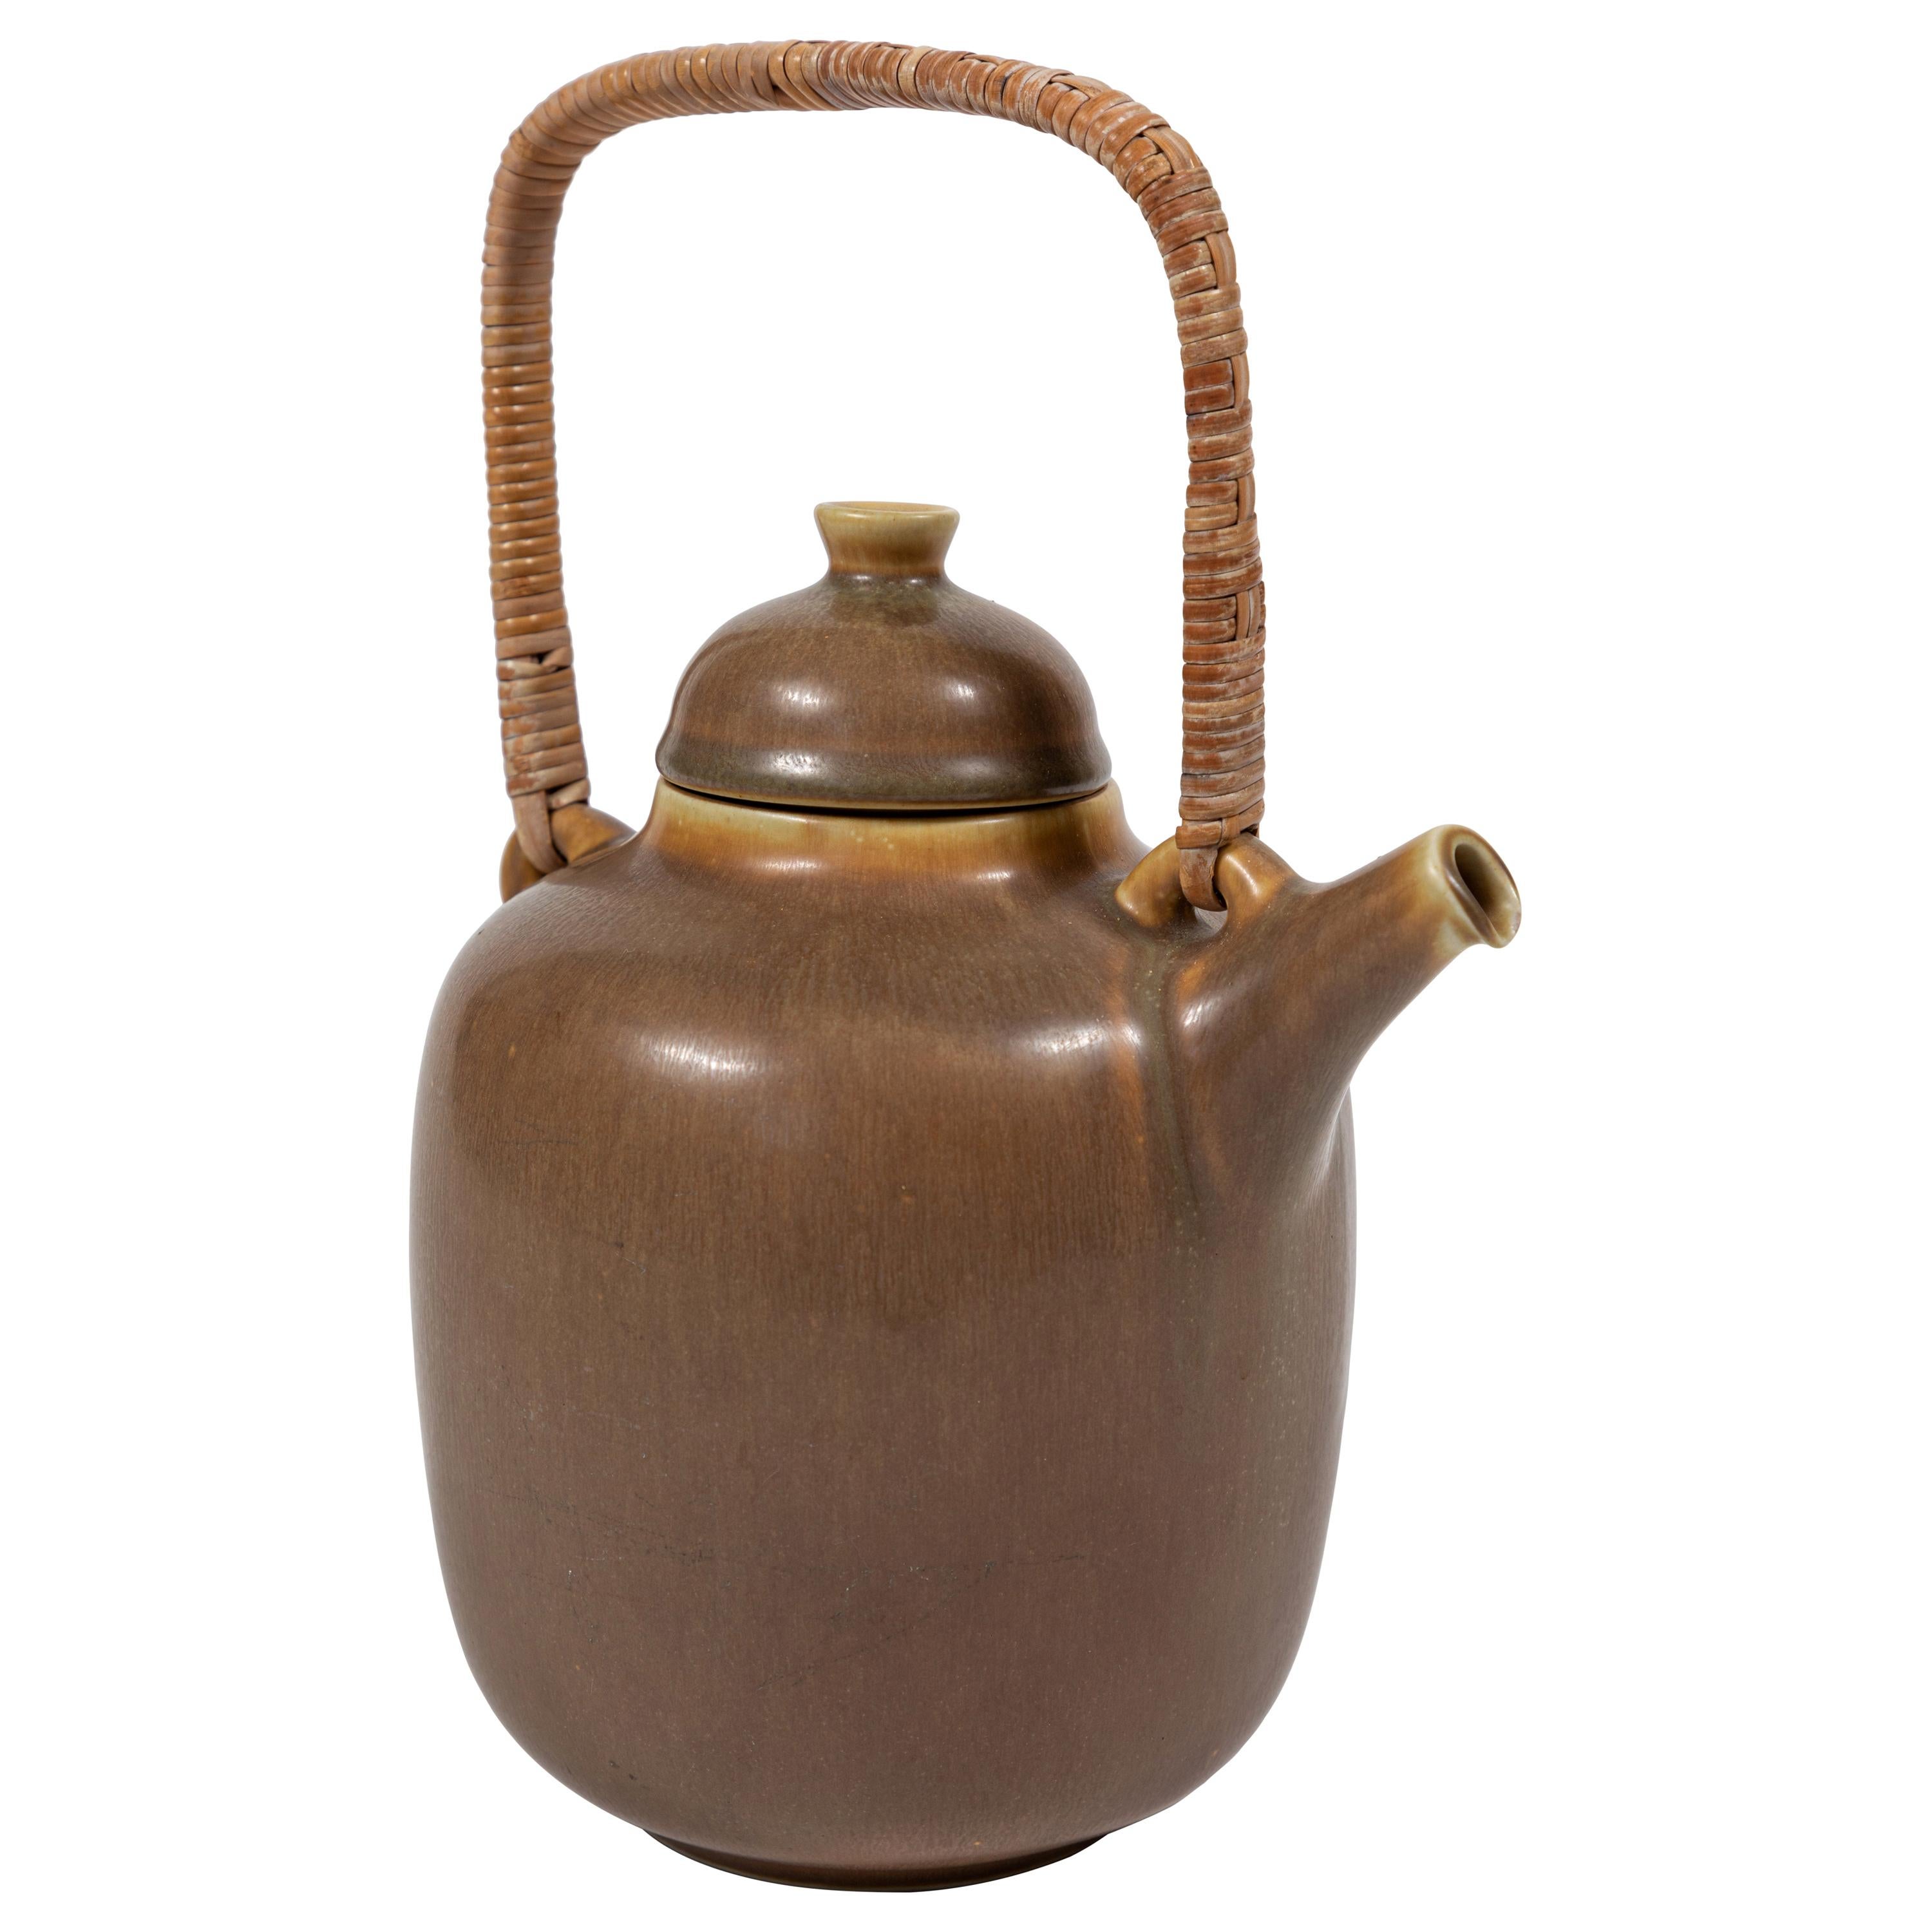 Midcentury "Palshus" Ceramic Teapot, Denmark